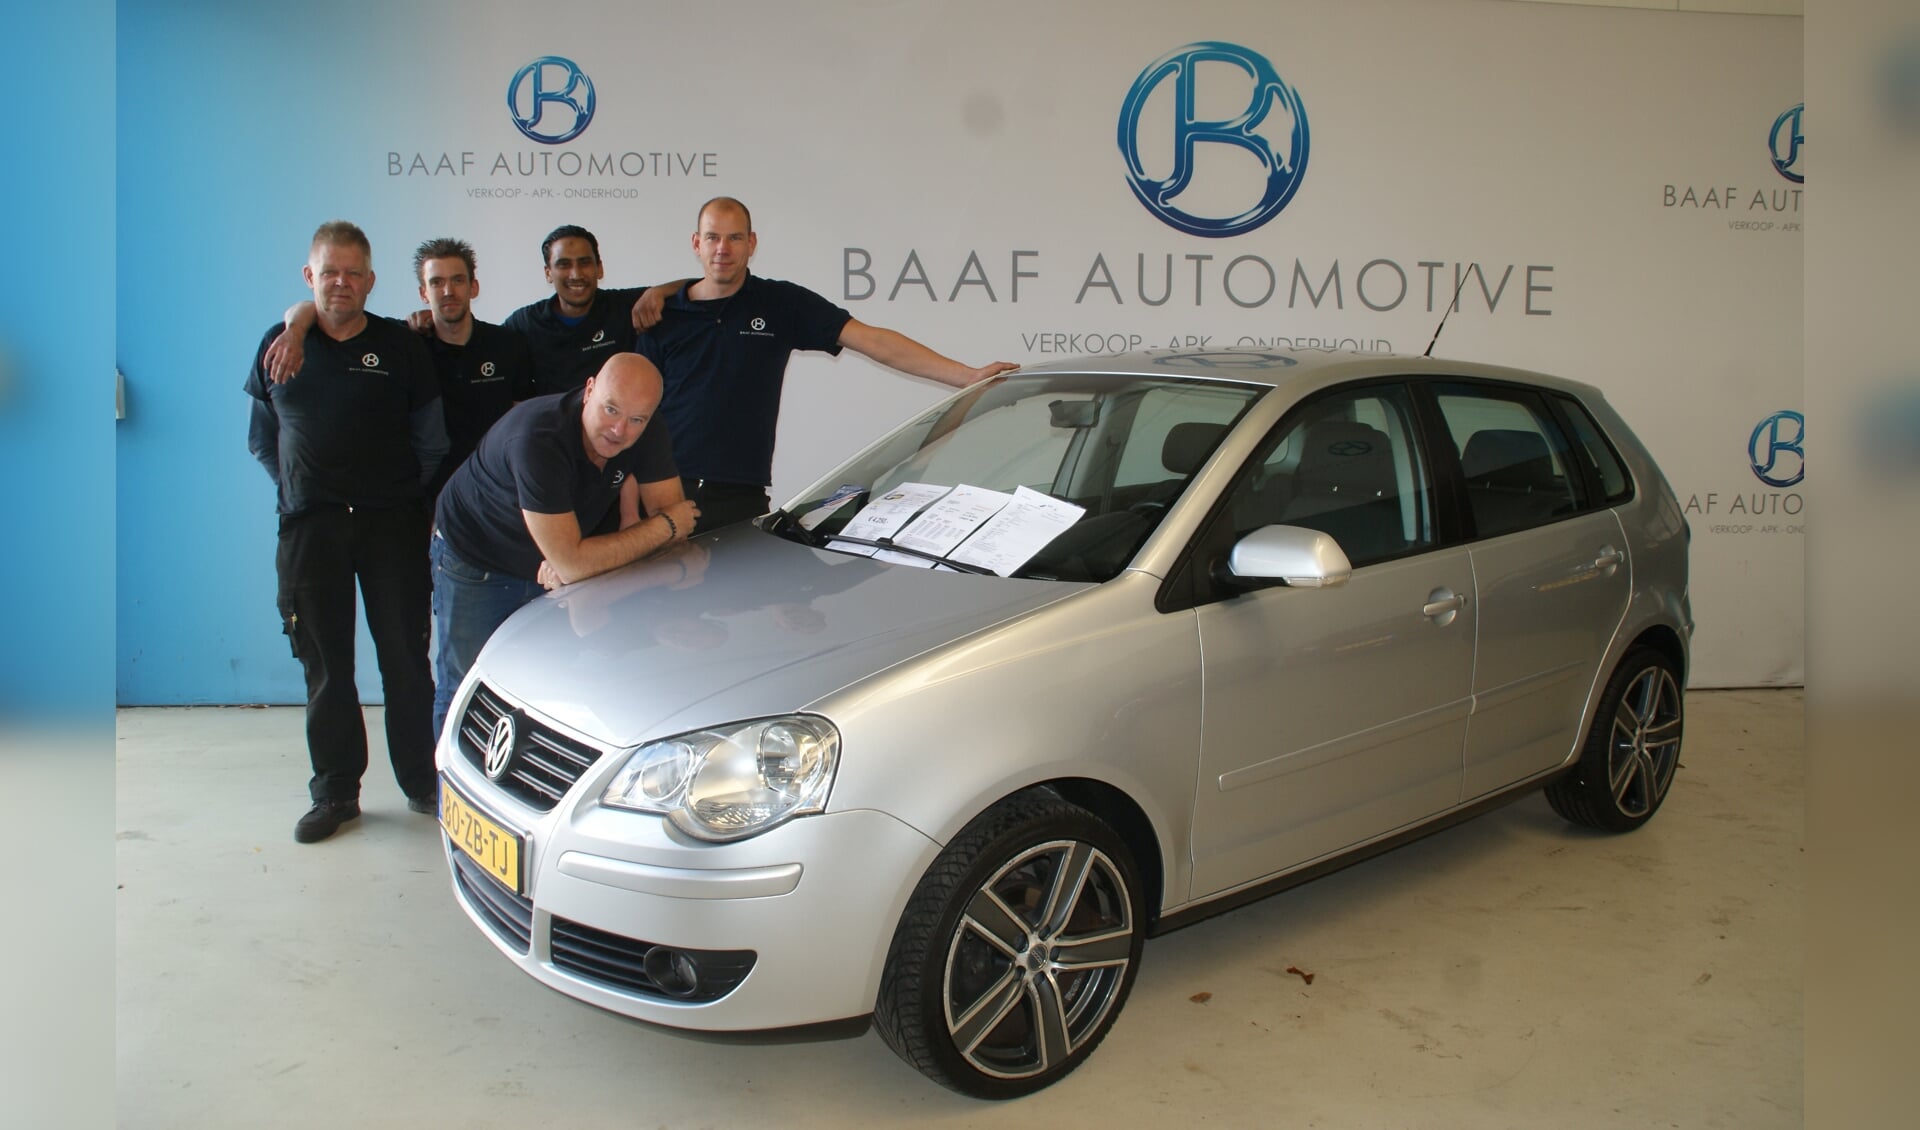 Het team van Baaf Automotive.